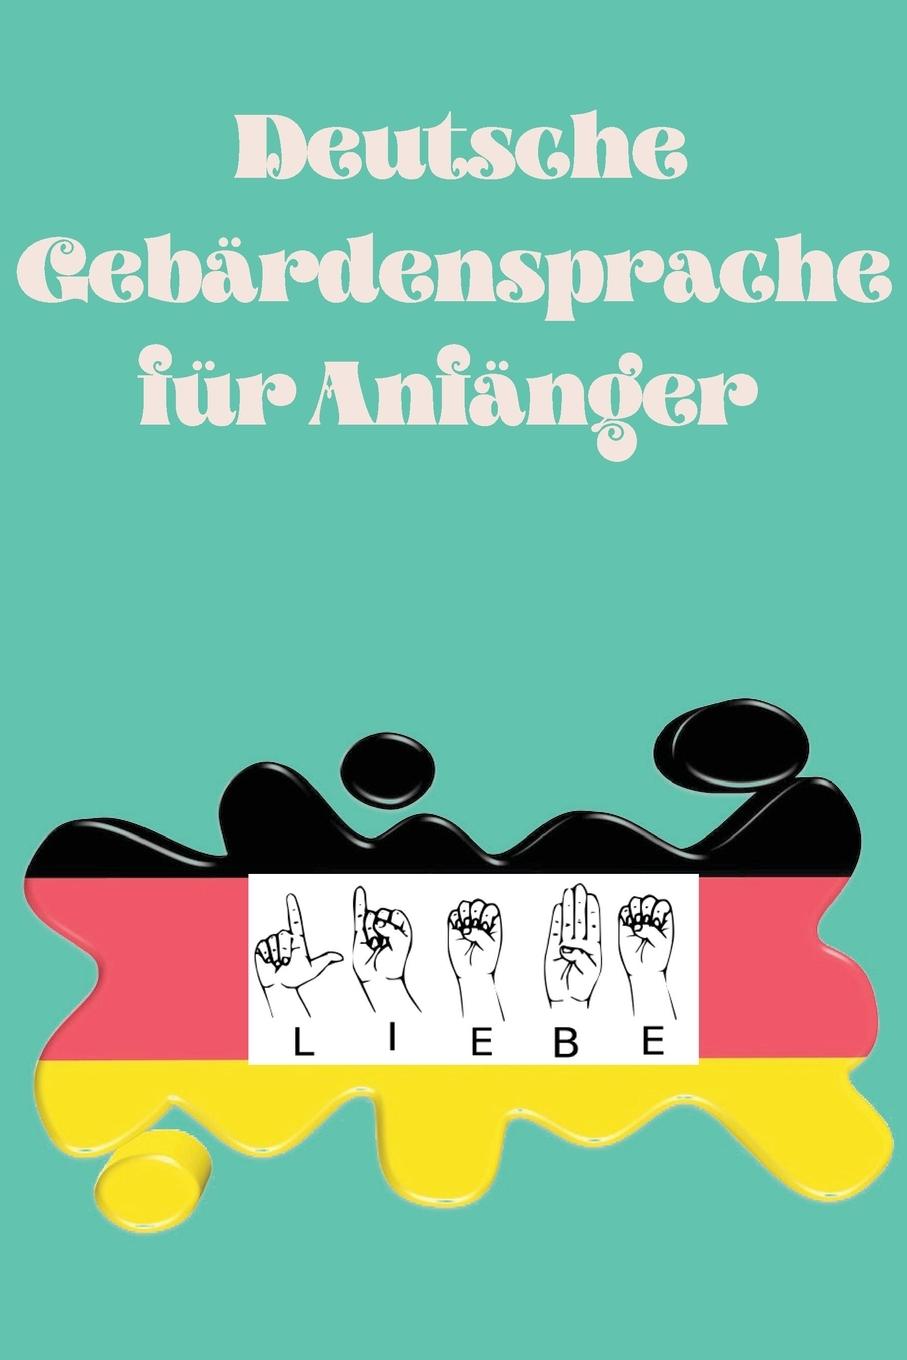 Kniha Deutsche Gebardensprache fur Anfanger.Lernbuch, geeignet fur Kinder, Jugendliche und Erwachsene. Enthalt das Alphabet. 